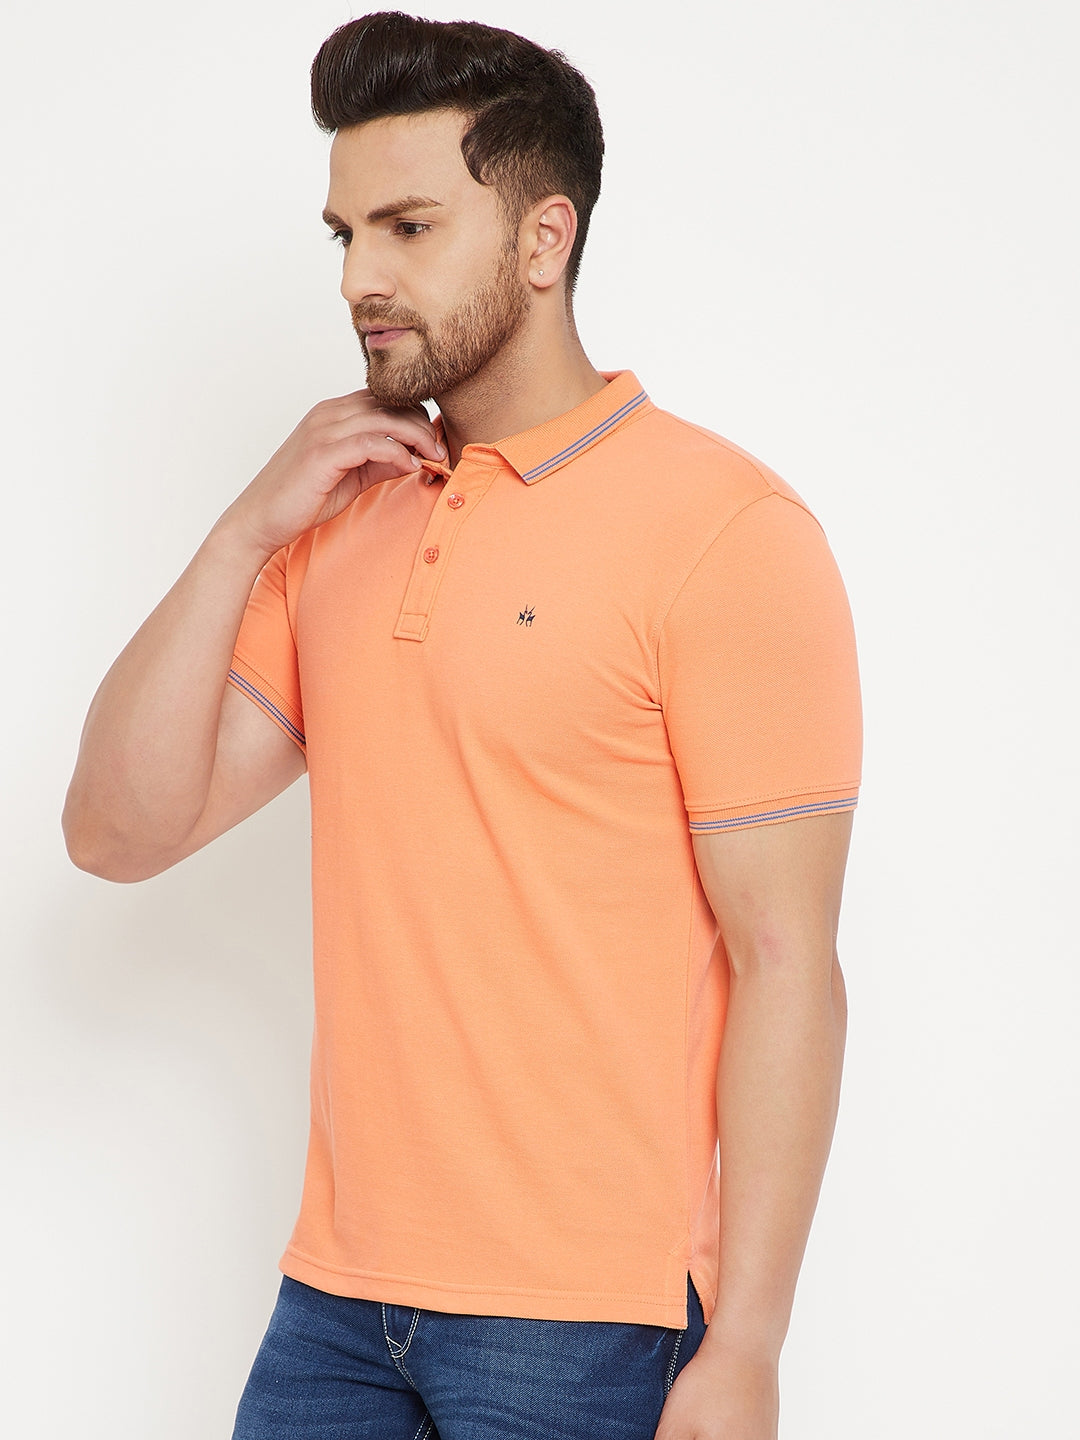 Orange T-shirt - Men T-Shirts